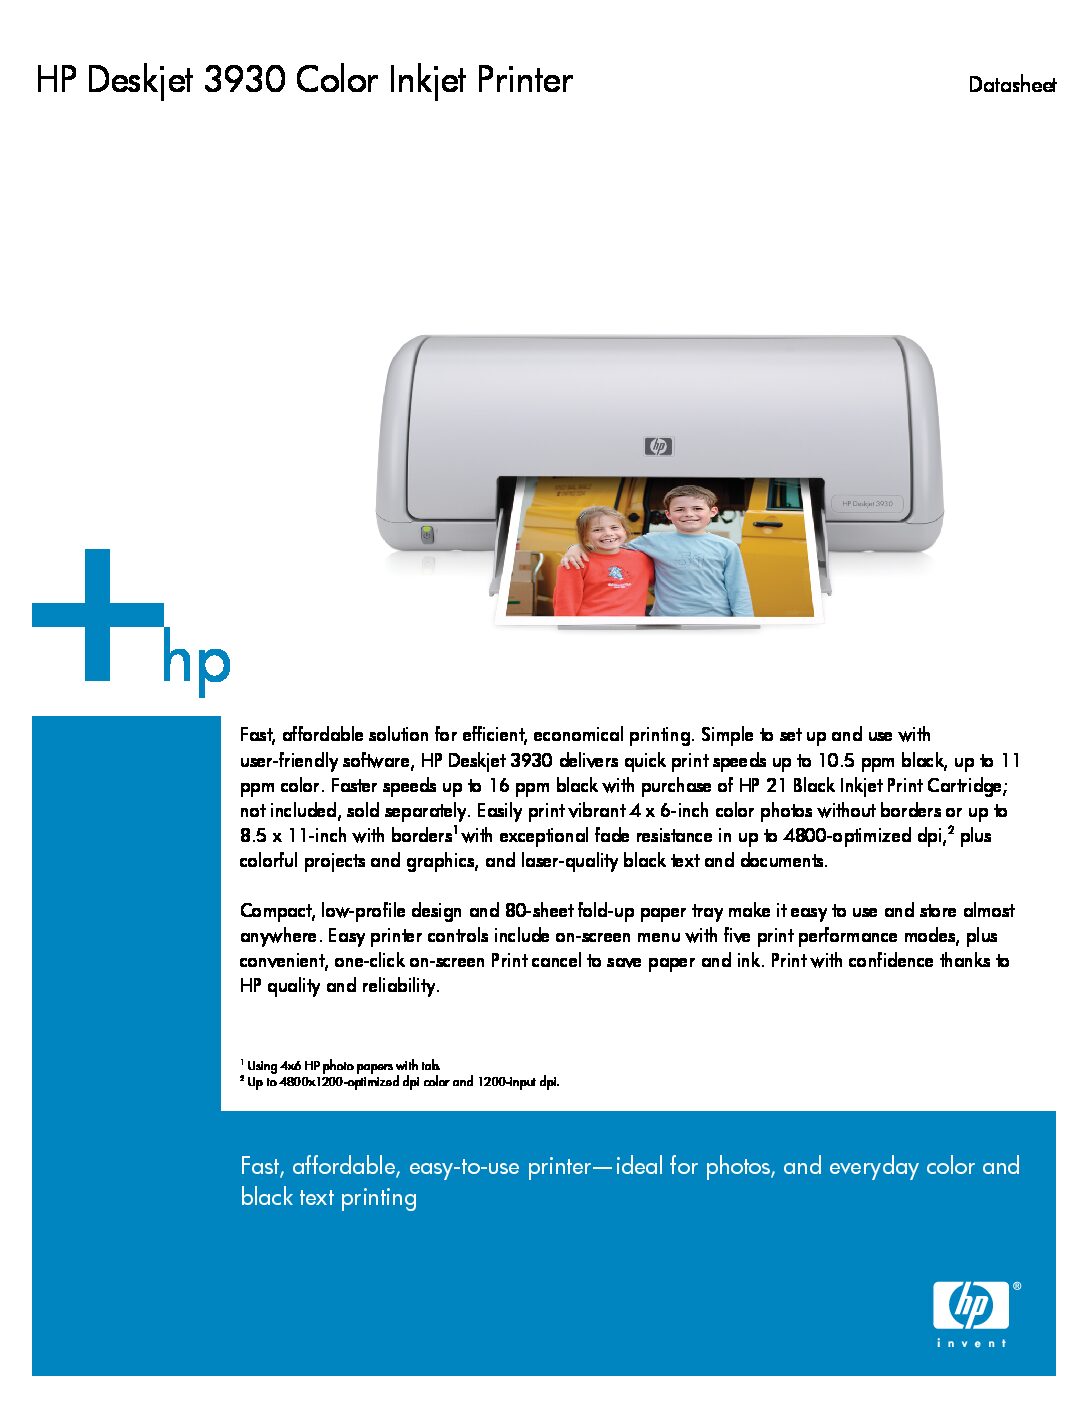 HP Deskjet 3930 Printer